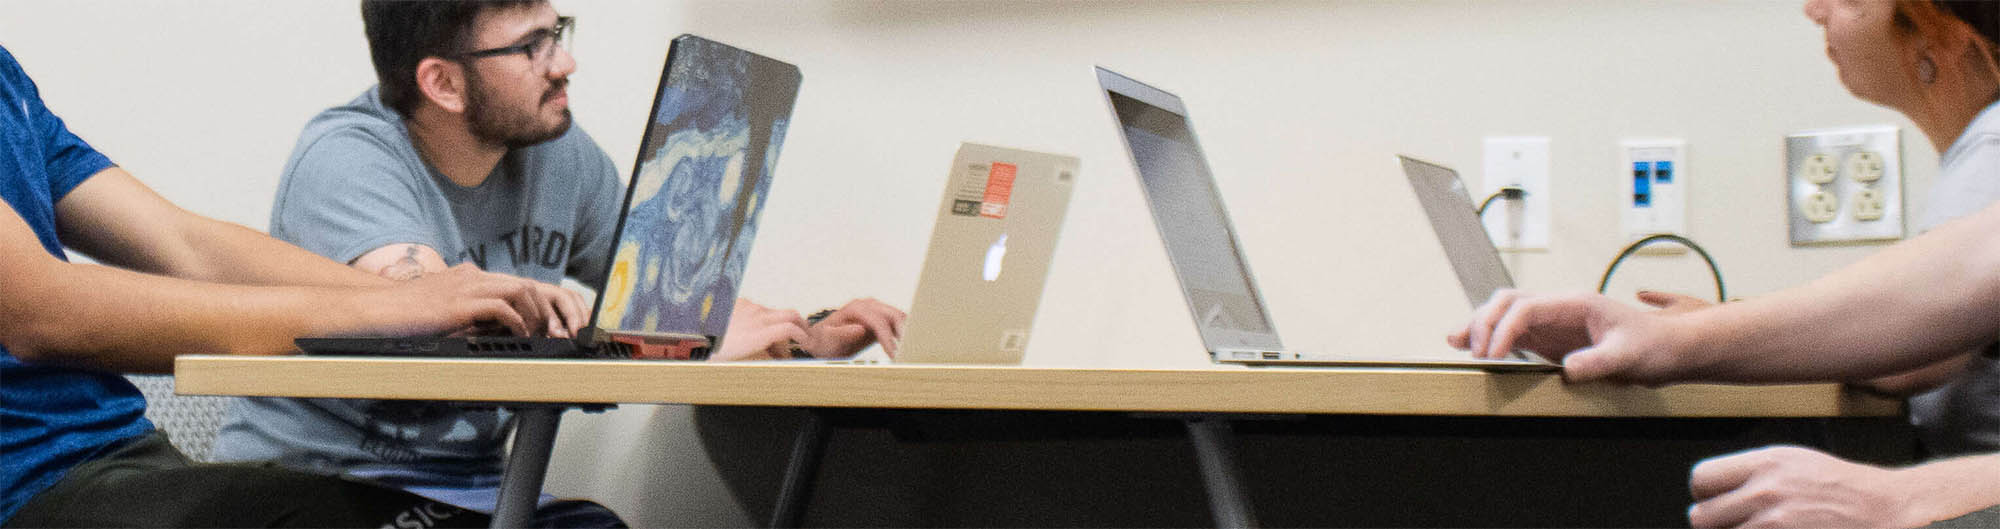 ארבעה אנשים ליד שולחן עם מחשבים ניידים